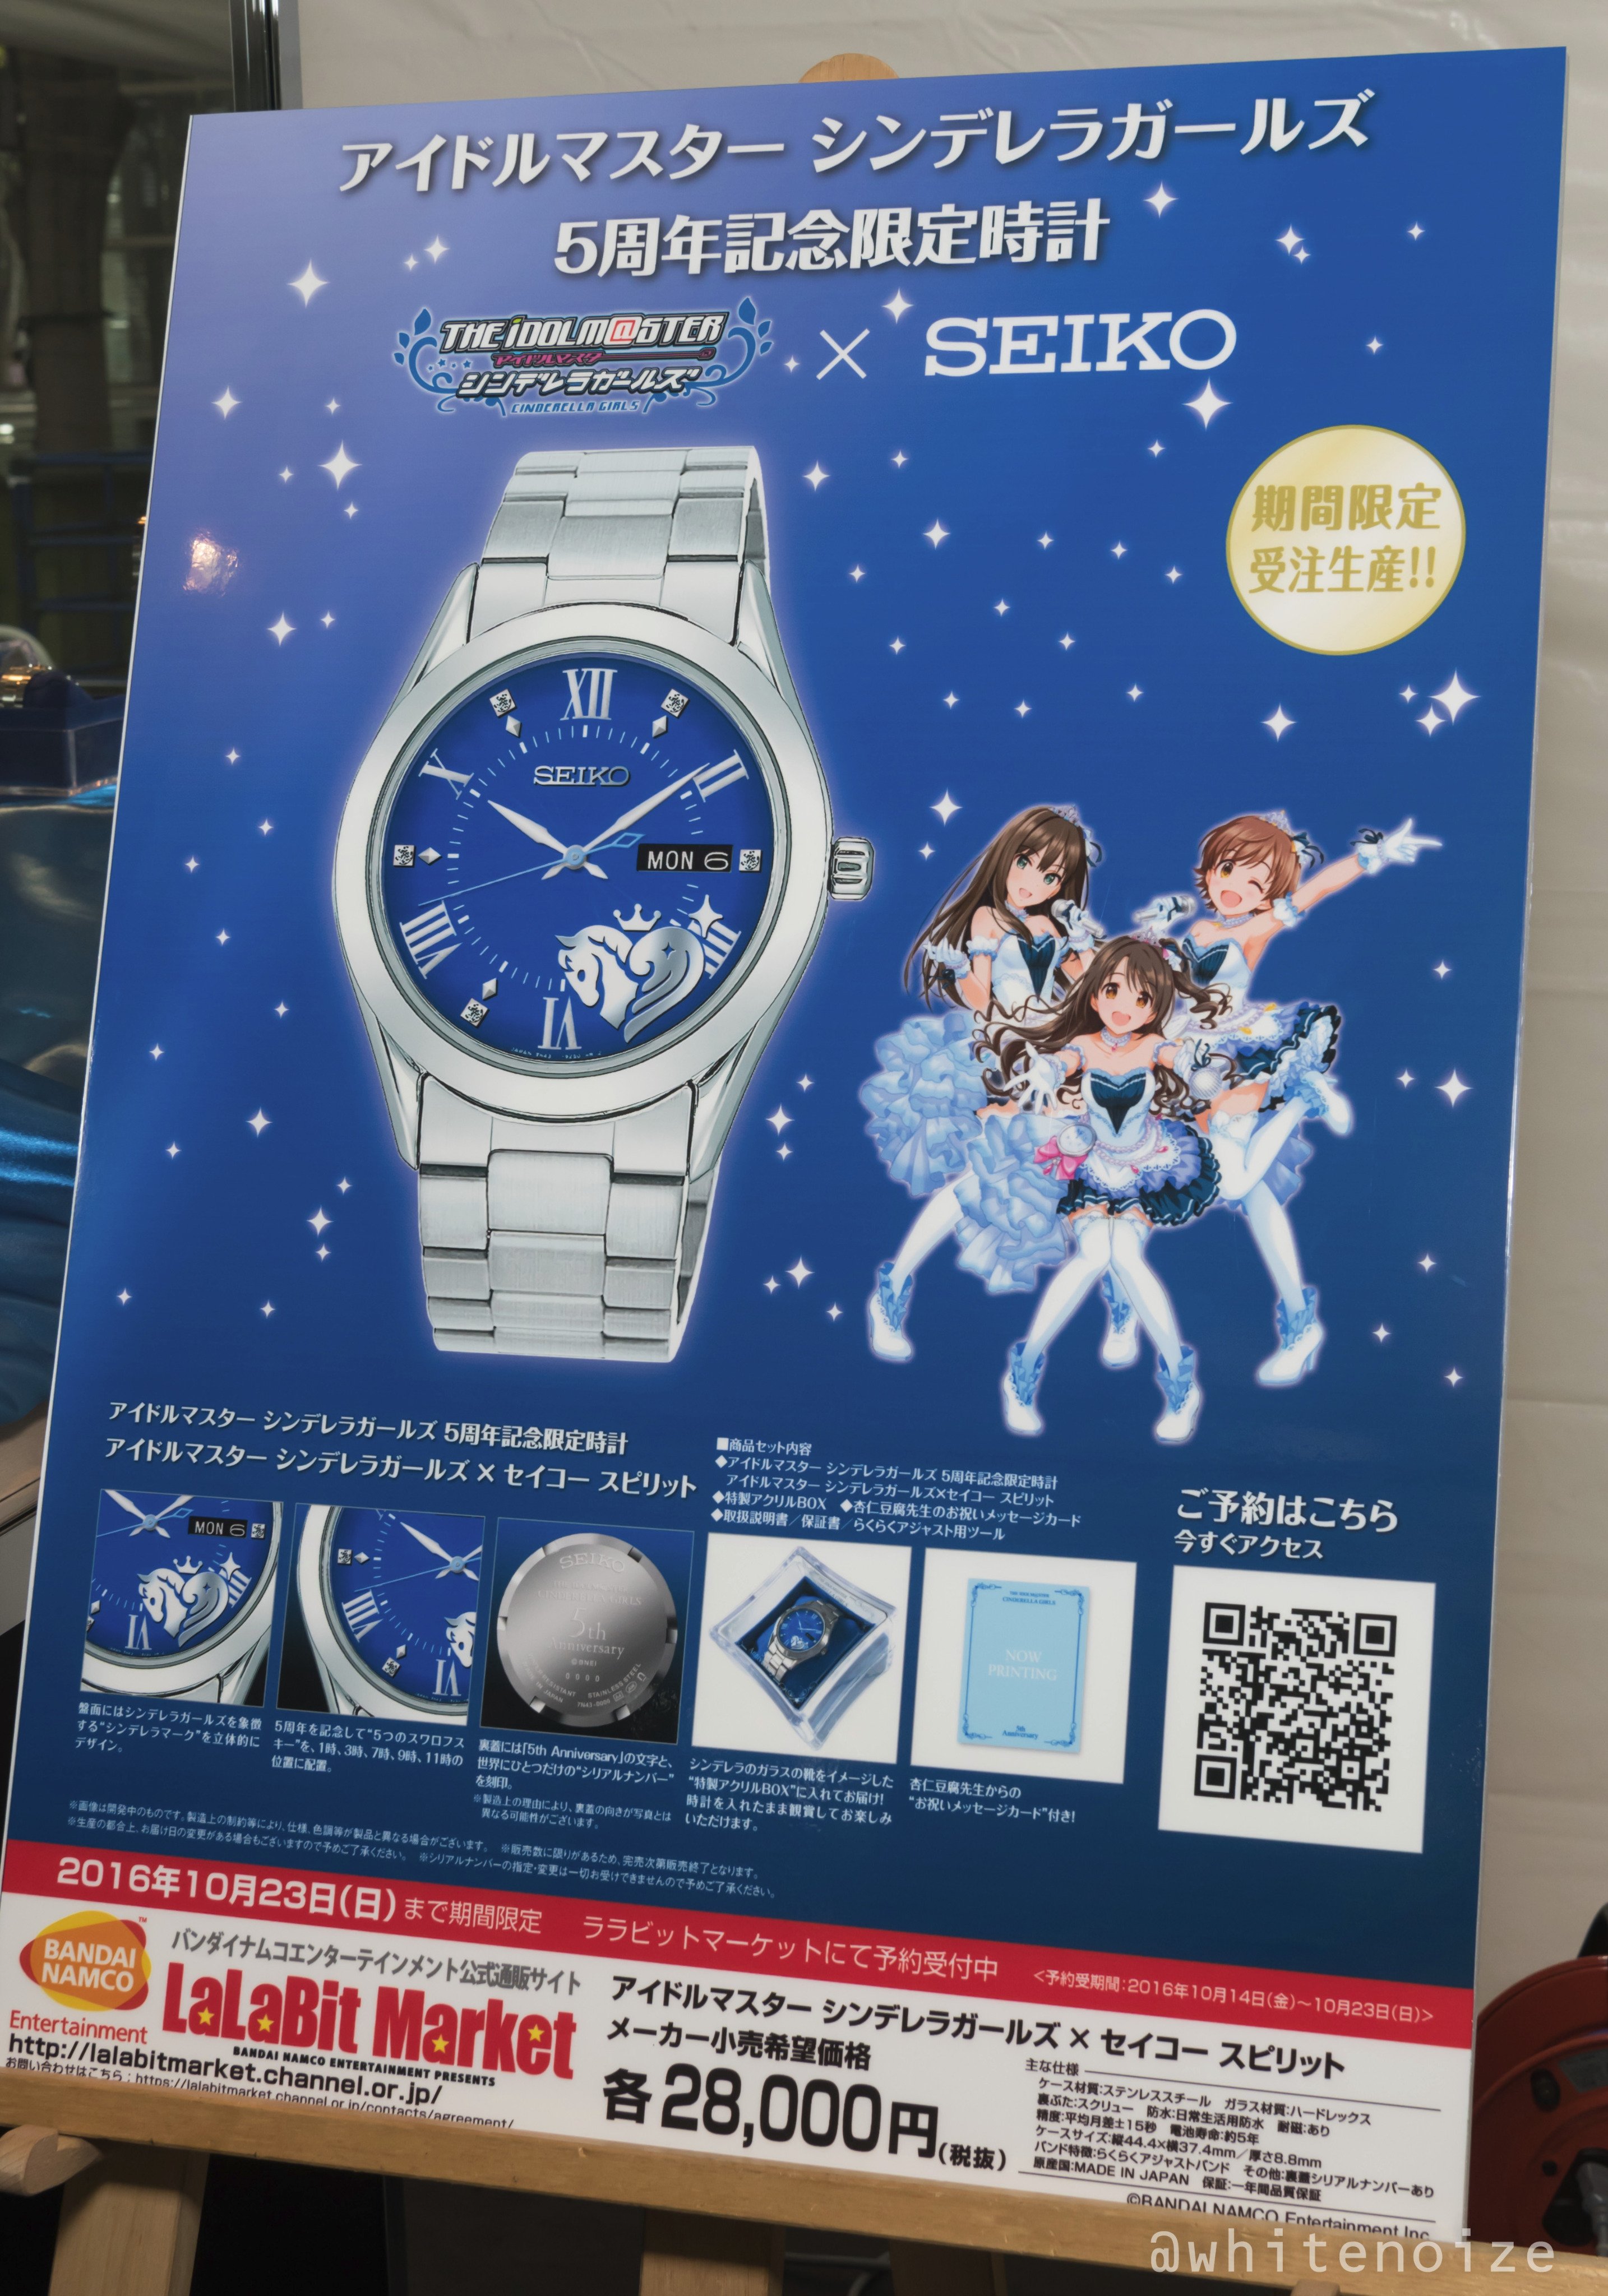 最新入荷 専用 アイドルマスター シンデレラガールズ Seiko 腕時計 5周年記念 キャラクターグッズ